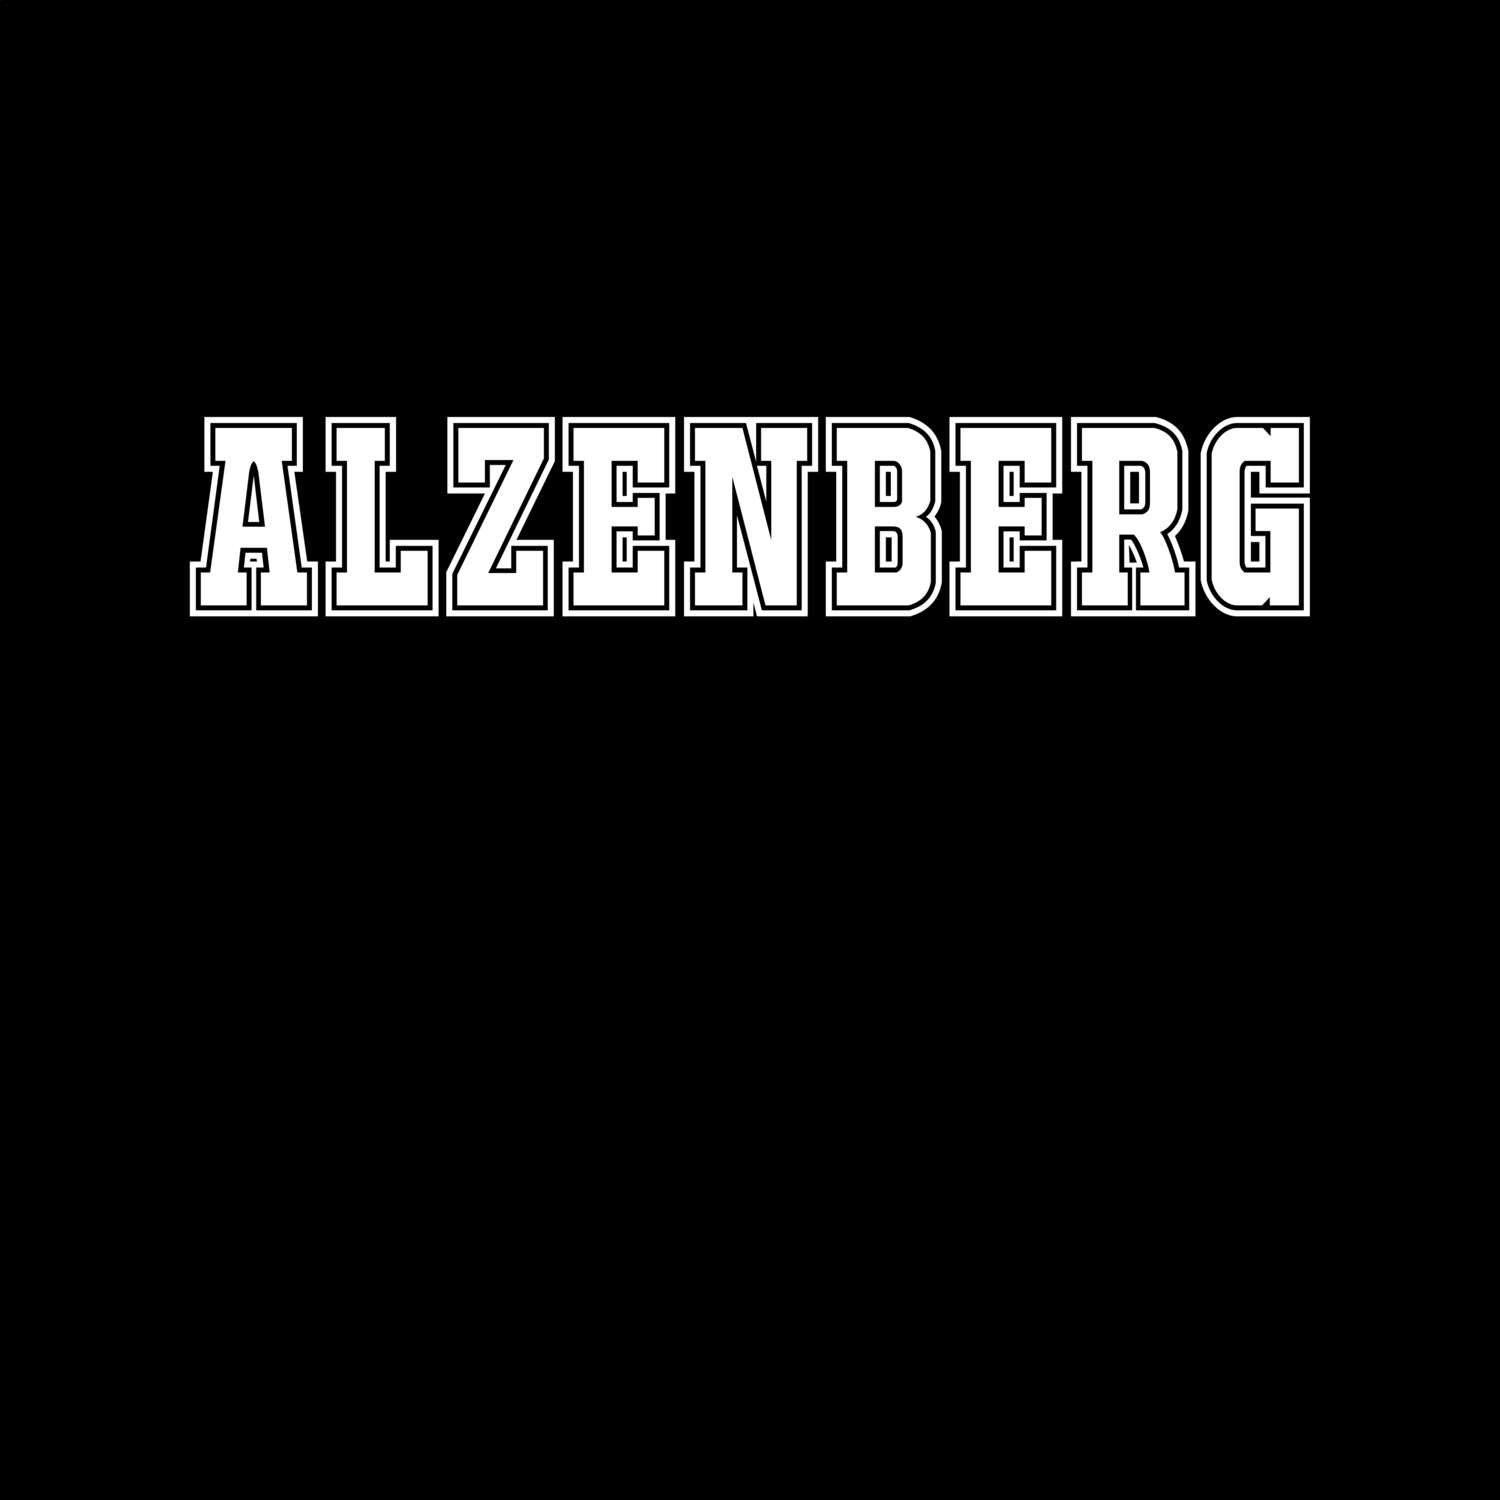 Alzenberg T-Shirt »Classic«